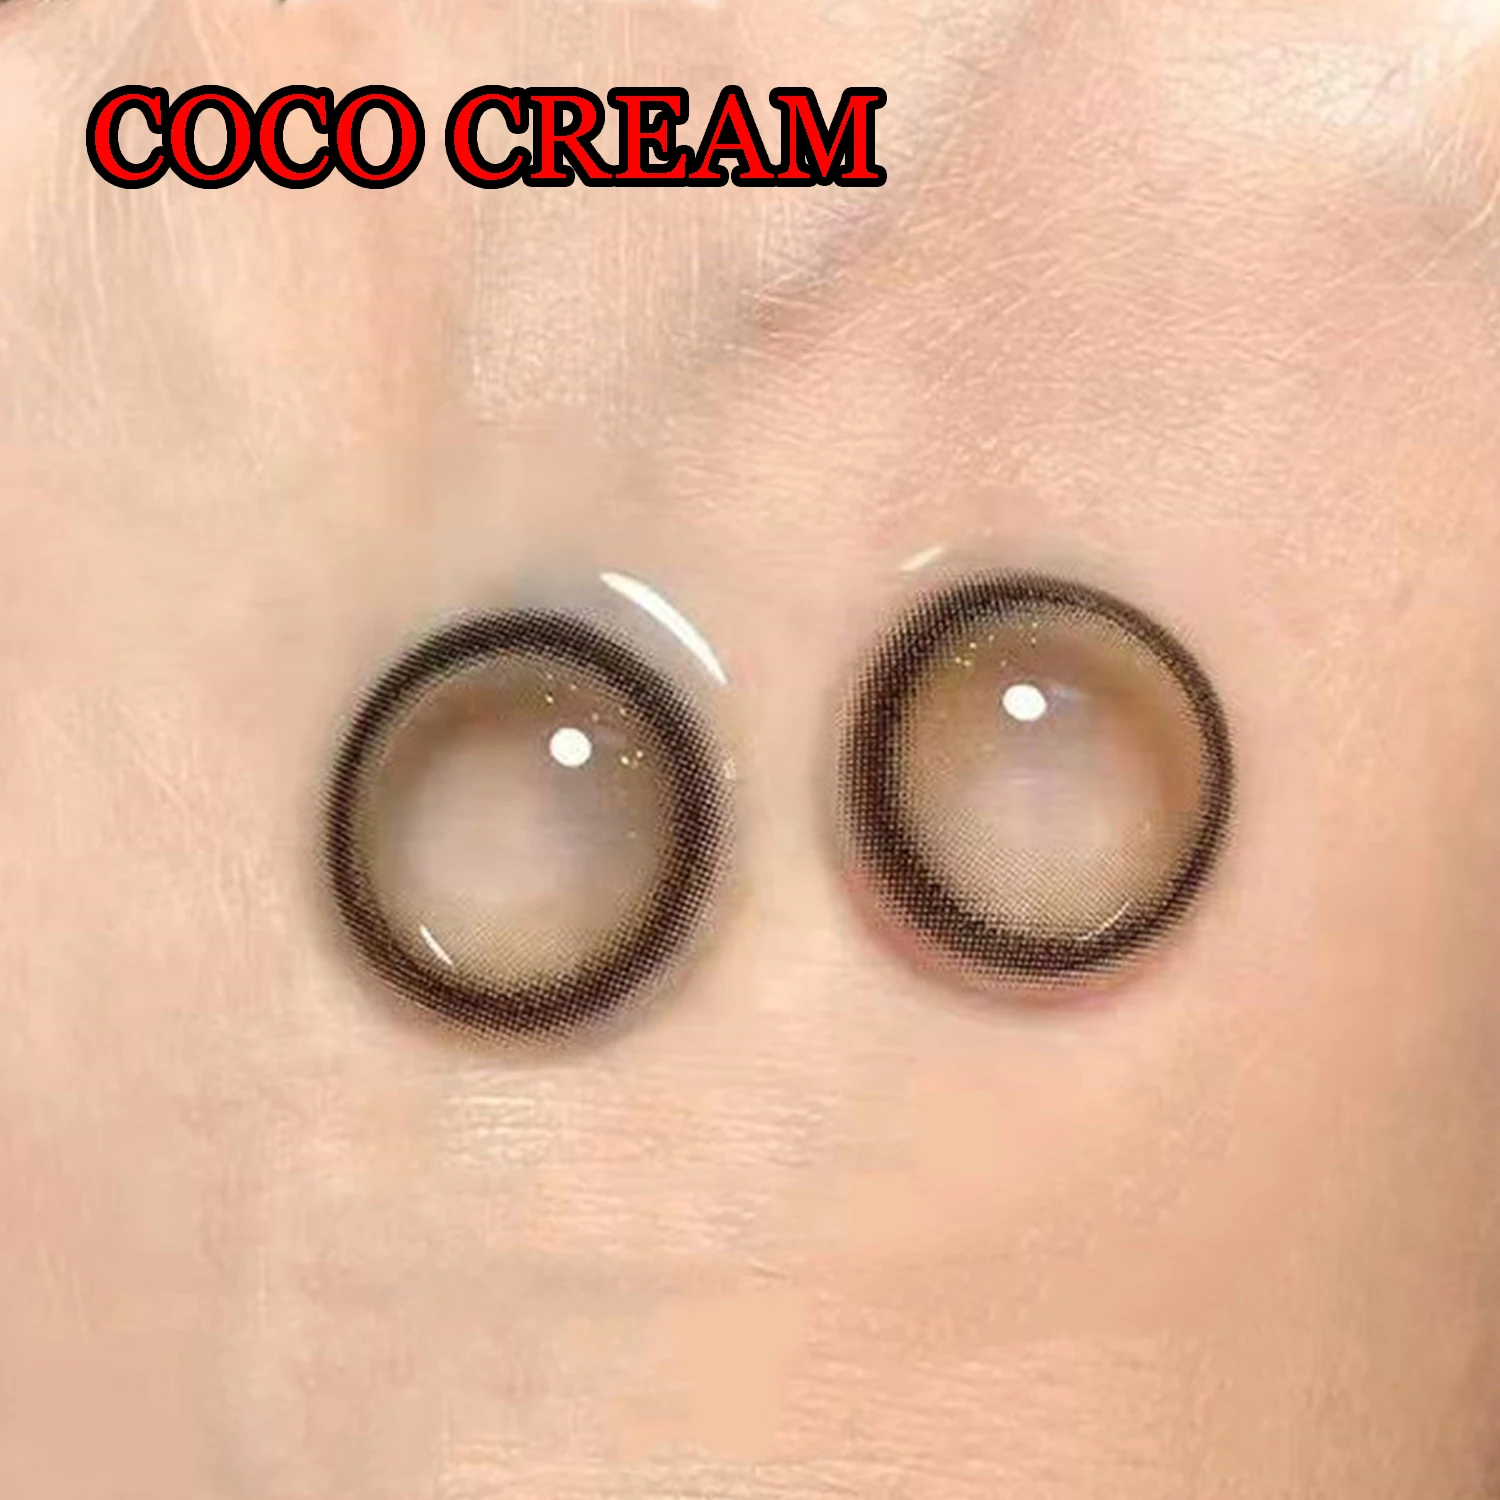 

Контактные линзы Dolly 14,50 мм для окрашивания глаз, 1 год использования, женские и мужские мягкие контактные линзы, контактные линзы Coco Cream